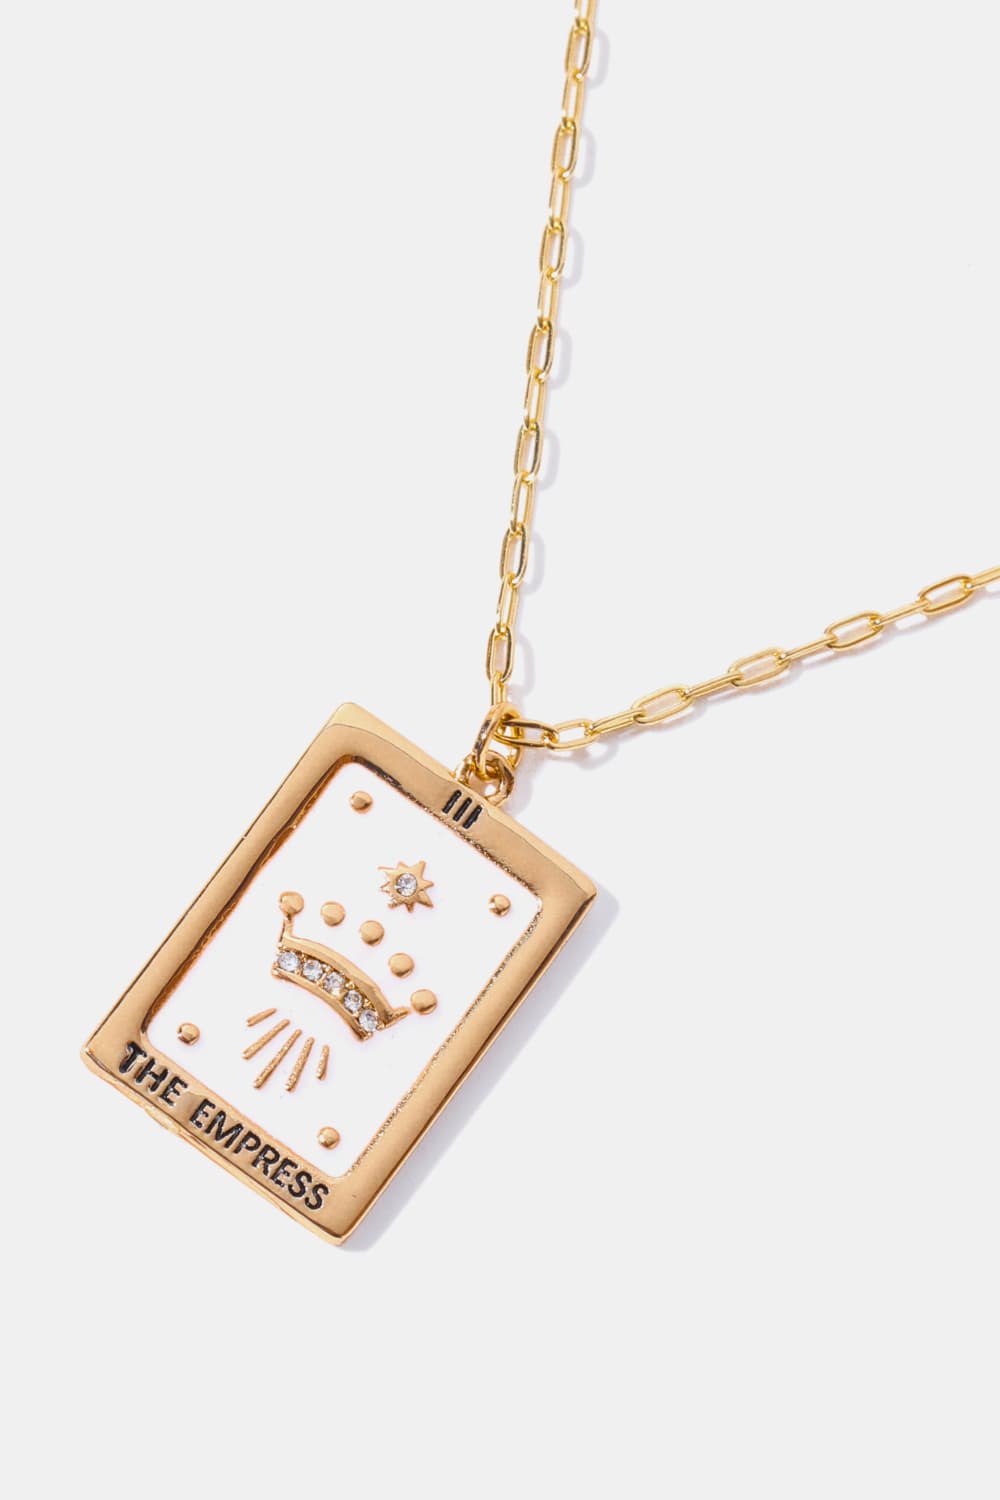 Tarot Card Pendant Necklace | AdoreStarr